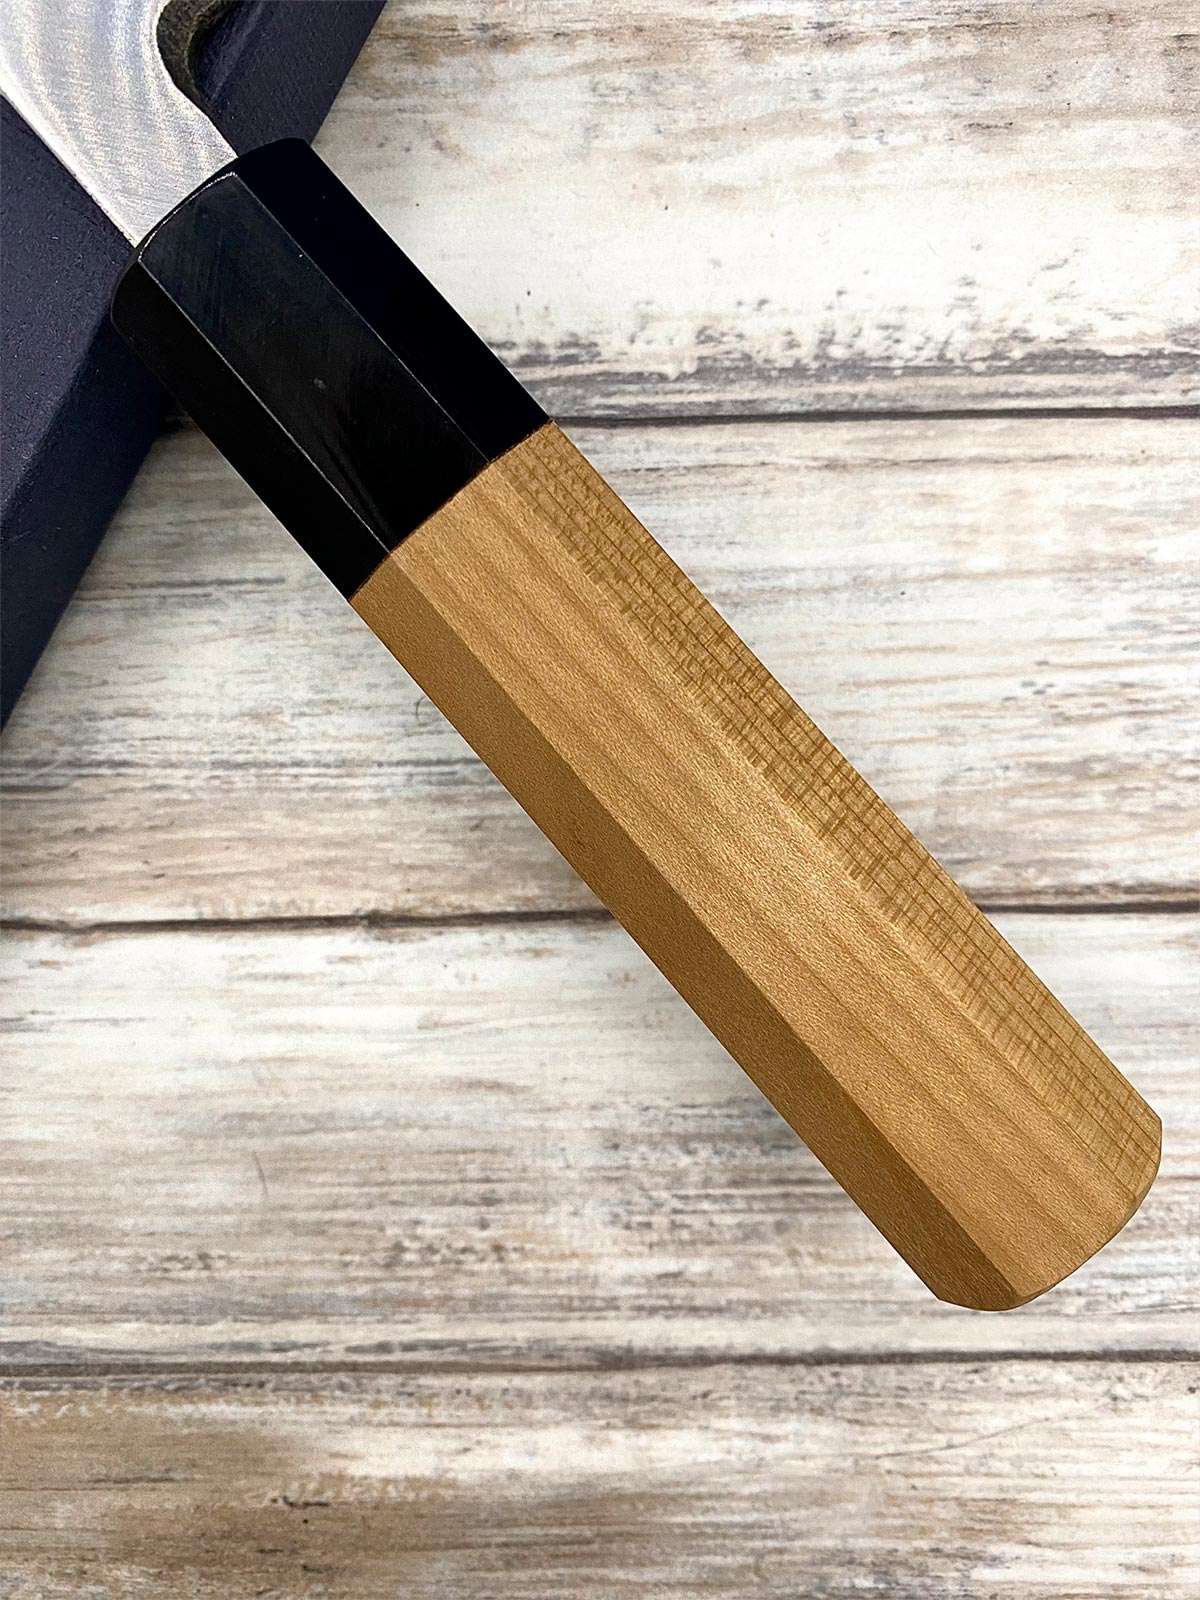 Acheter un Couteau artisanal Japonais Deba Shirogami#2 16,5 cm à Paris meilleur vente de couteaux de cuisine nippon grande marque de qualité